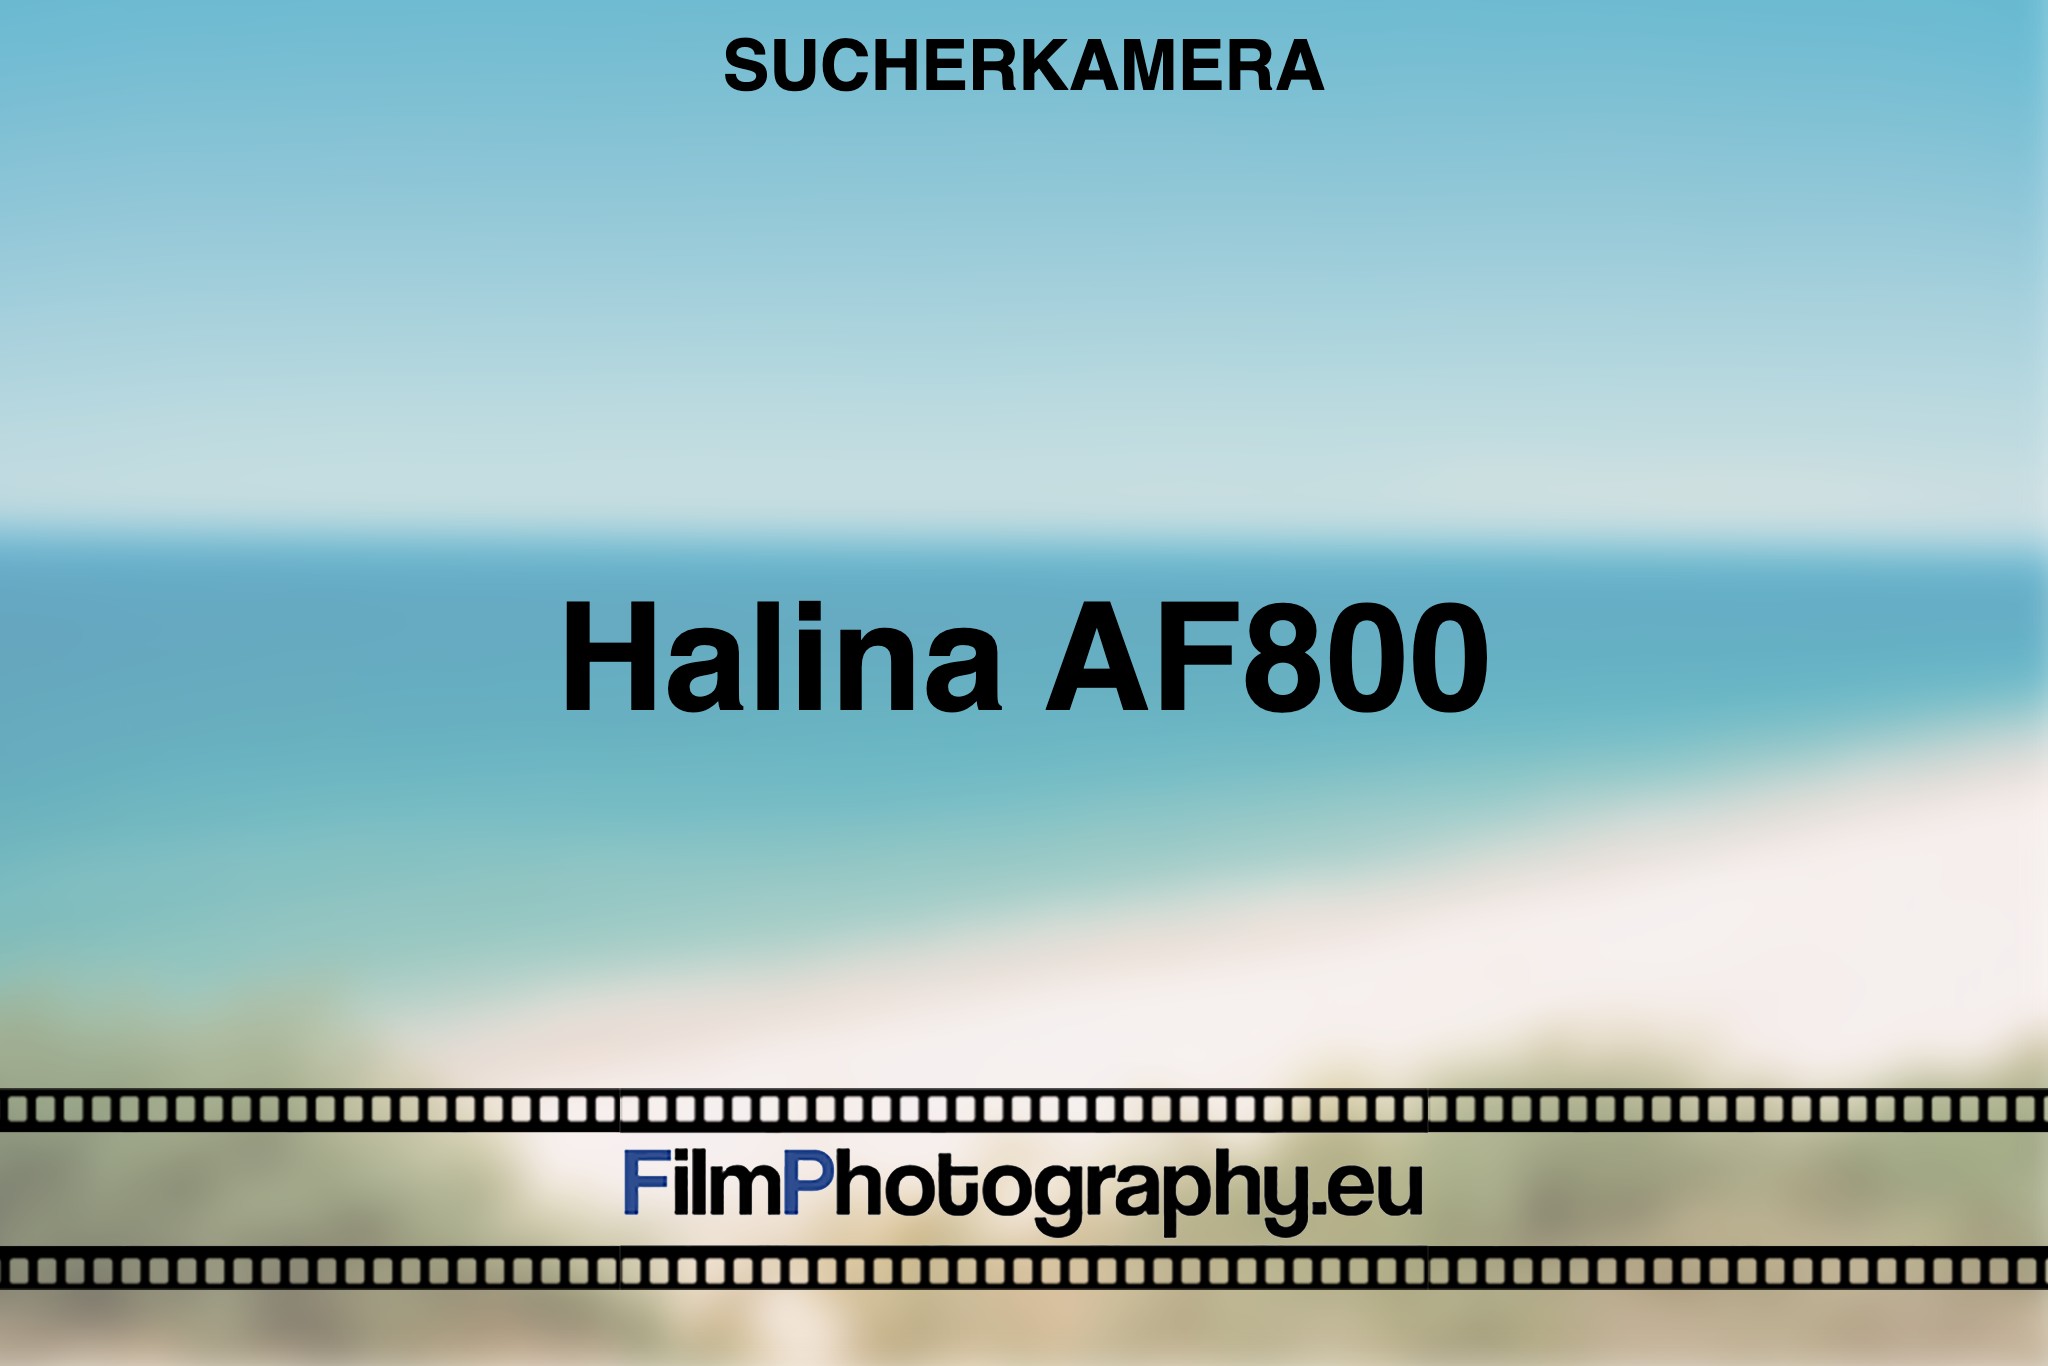 halina-af800-sucherkamera-bnv